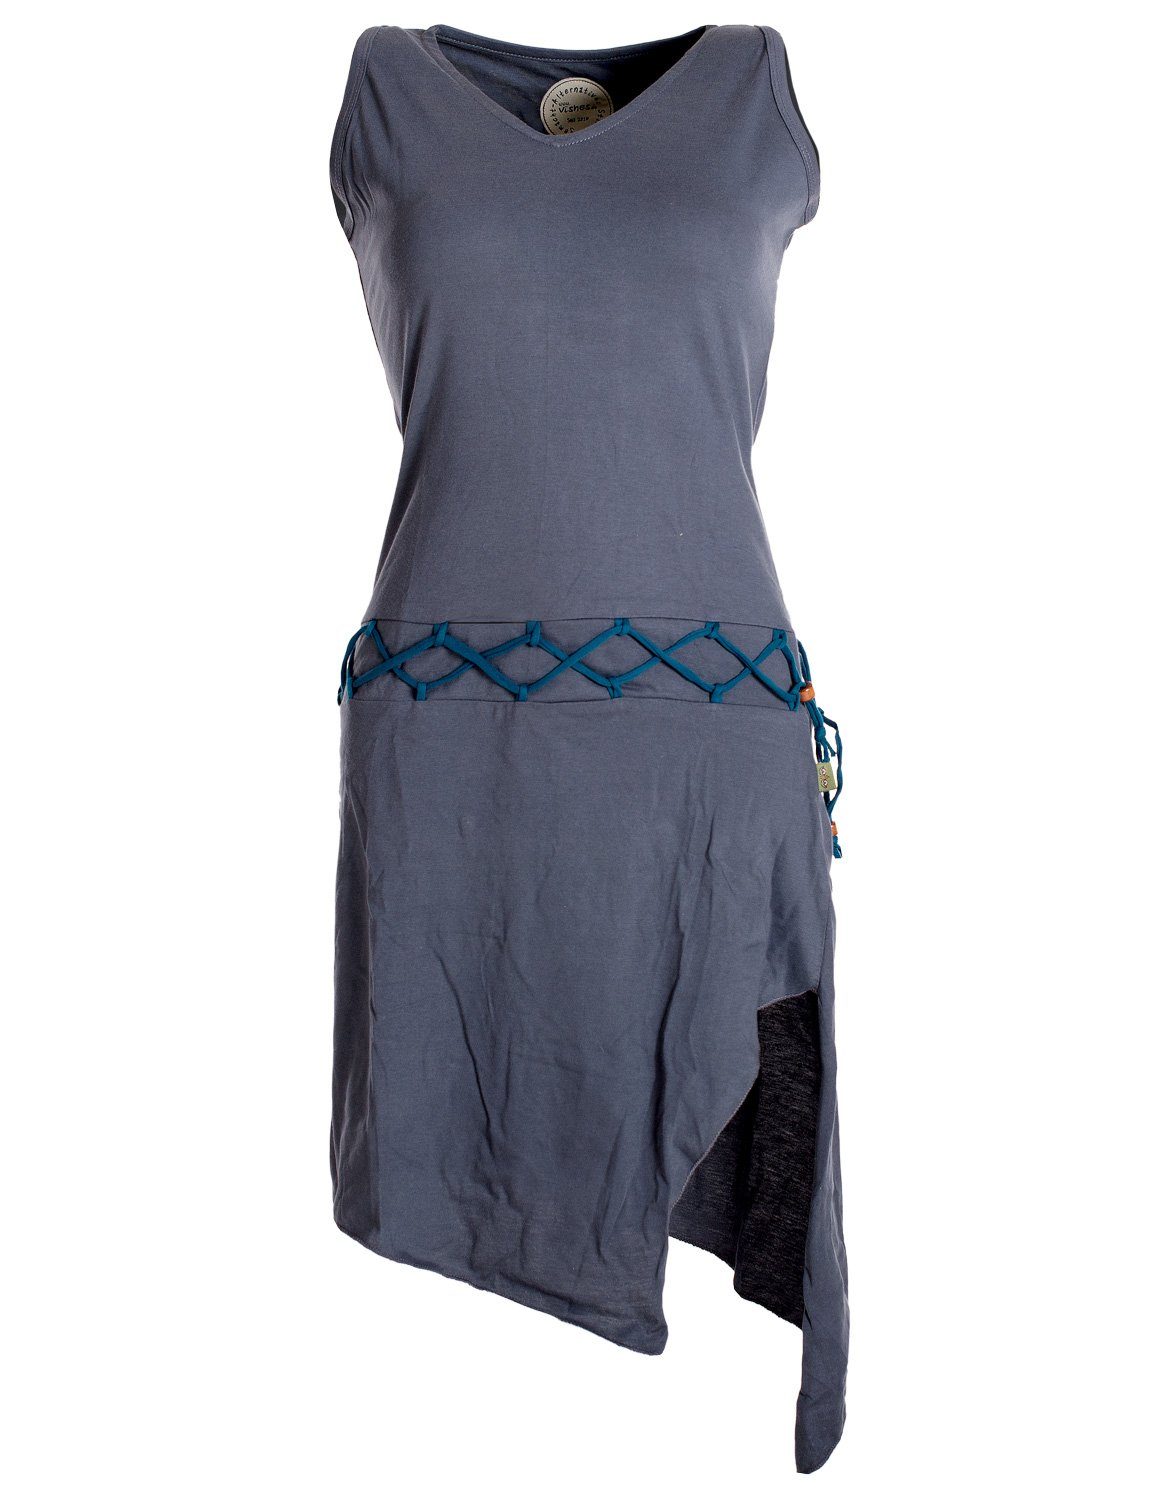 Vishes Sommerkleid Ärmelloses Kleid asymmetrisch Beinausschnitt Gürtel-Schnürung Hippie, Boho, Goa Elfen Style grau